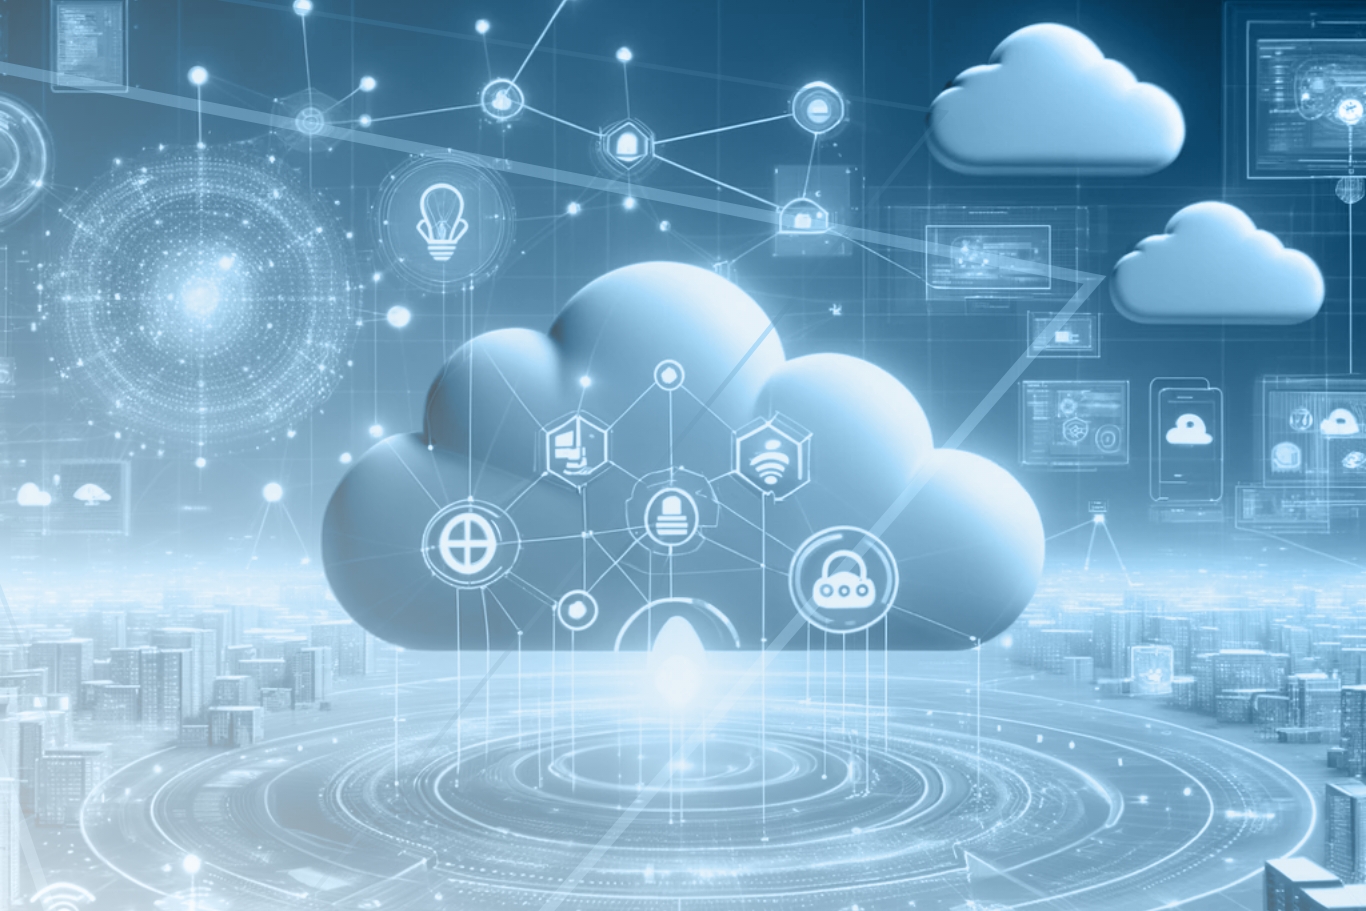 APIs, nube, integración cloud, gestión cloud, software a medida, desarrollo web, servicios digitales, transformación digital, seguridad de datos